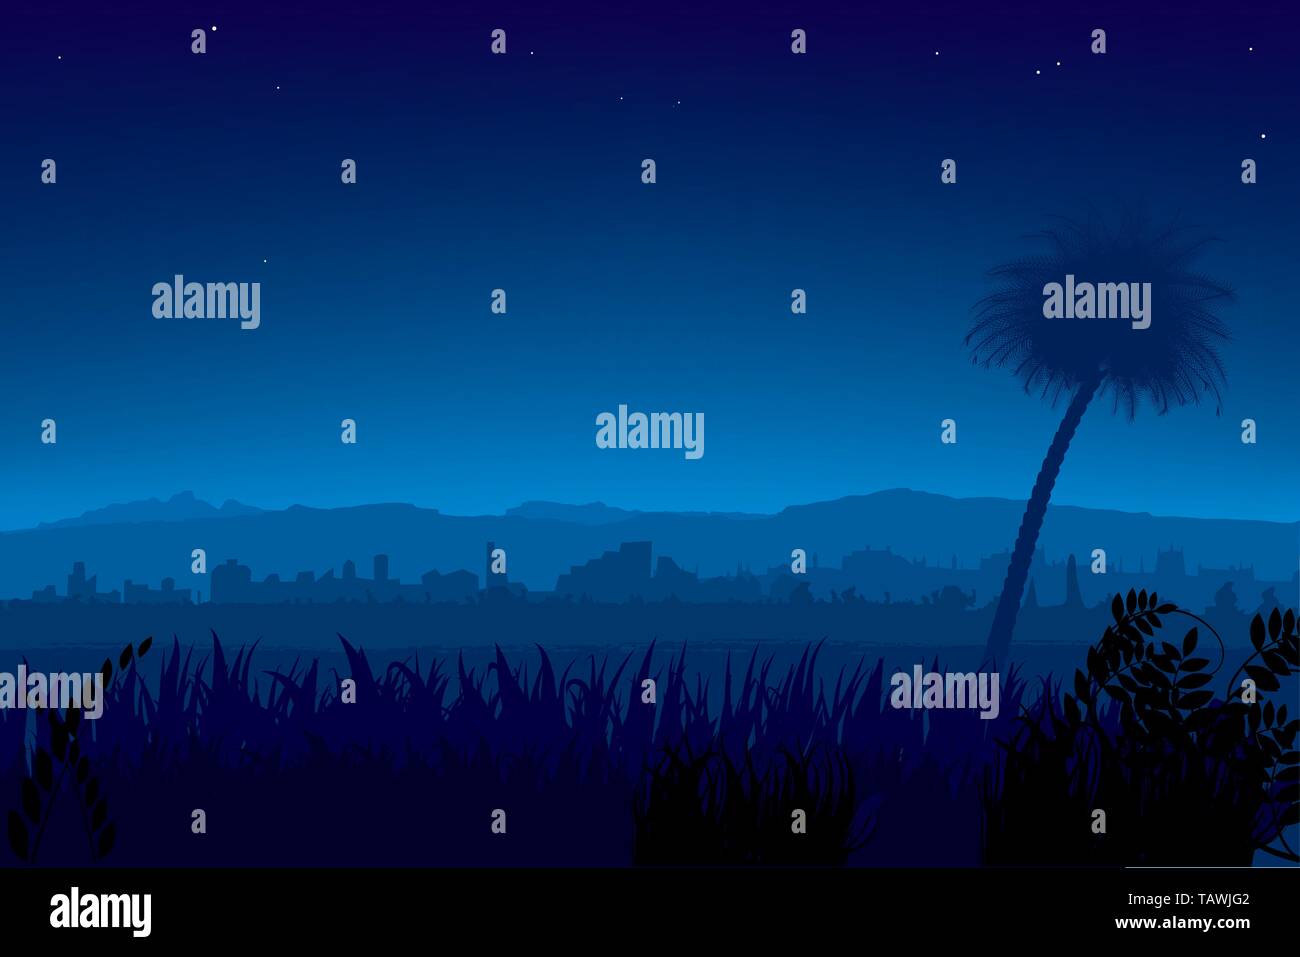 Illustrazione Vettoriale. Paesaggio notturno con palme e città in background. Illustrazione Vettoriale